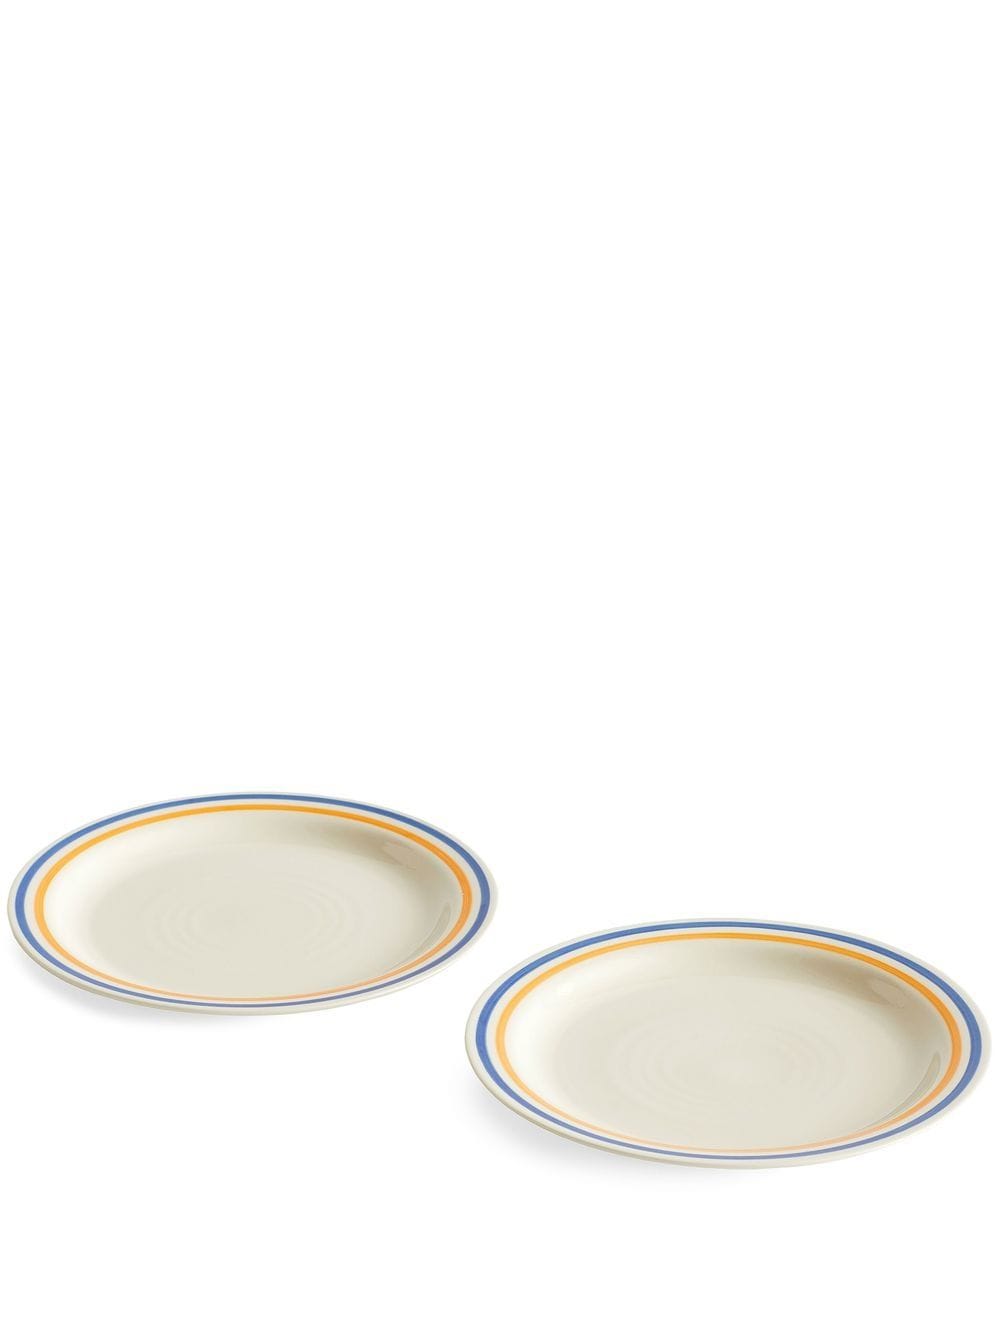 HAY set of two Sobremesa plates - Neutrals von HAY